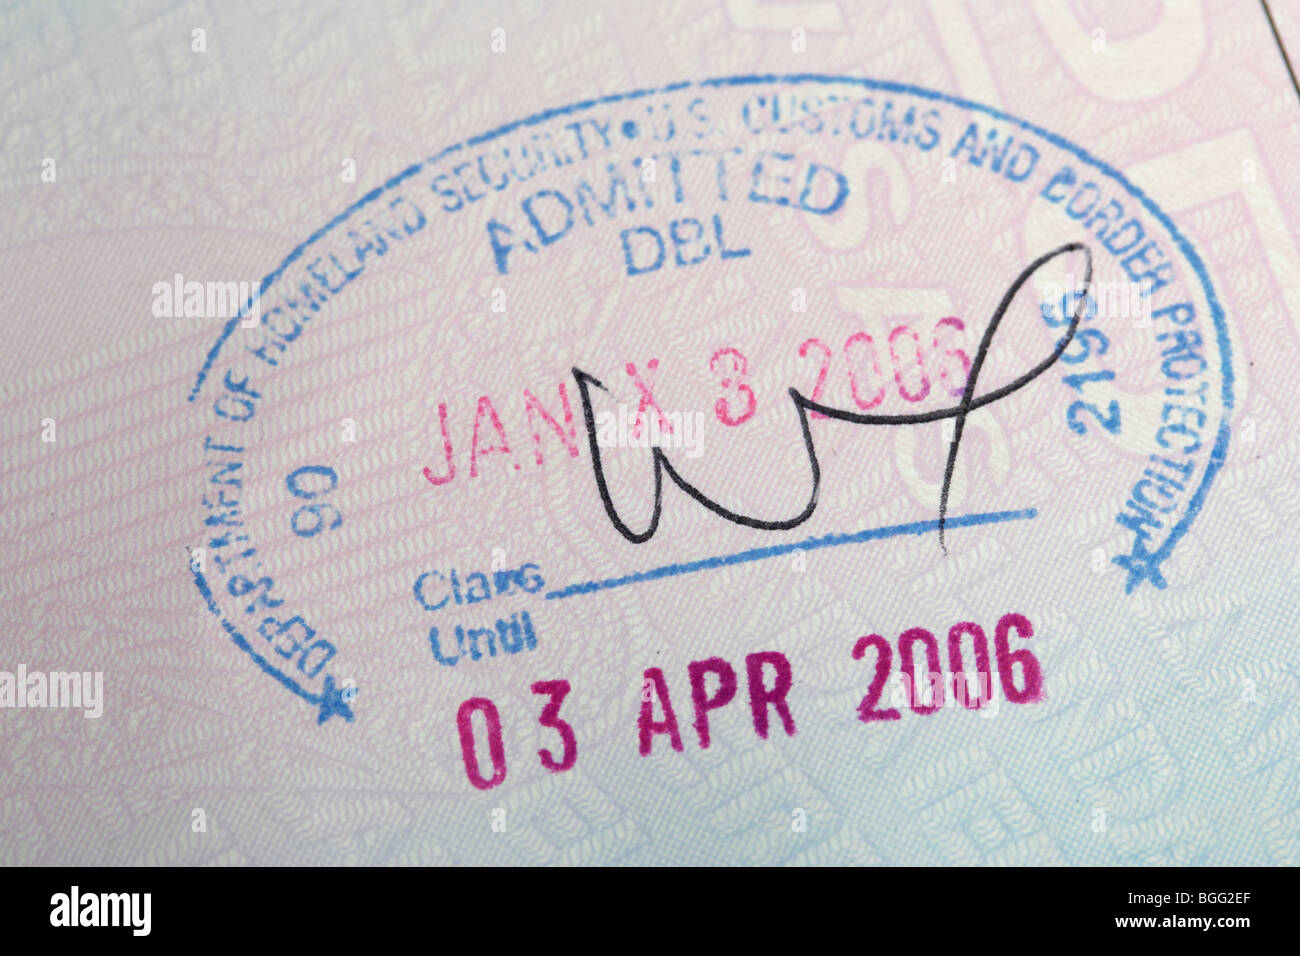 Ue irlandese timbrato il passaporto con visto di ingresso Department of Homeland security US Customs and Border Protection gioco in Dublino Foto Stock